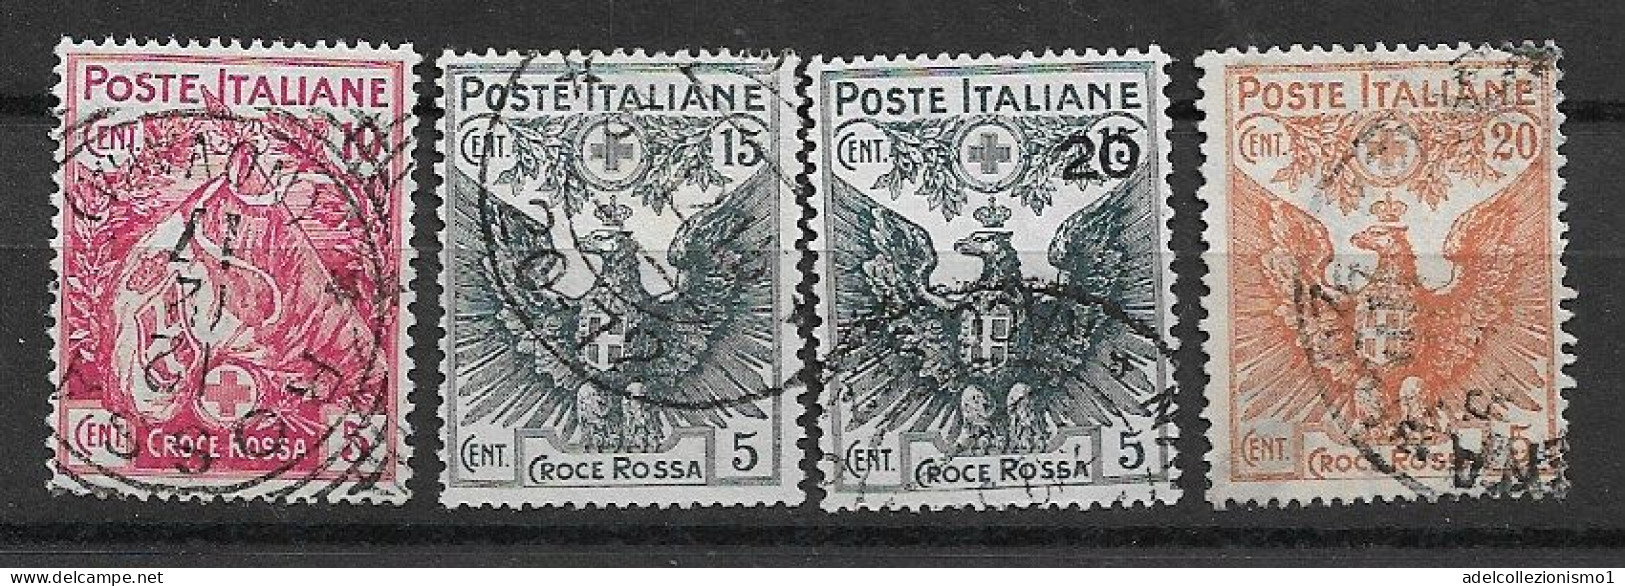 49549) Pro Croce Rossa - 1915/1916  -SERIE COMPLETA USATA - Pubblicitari